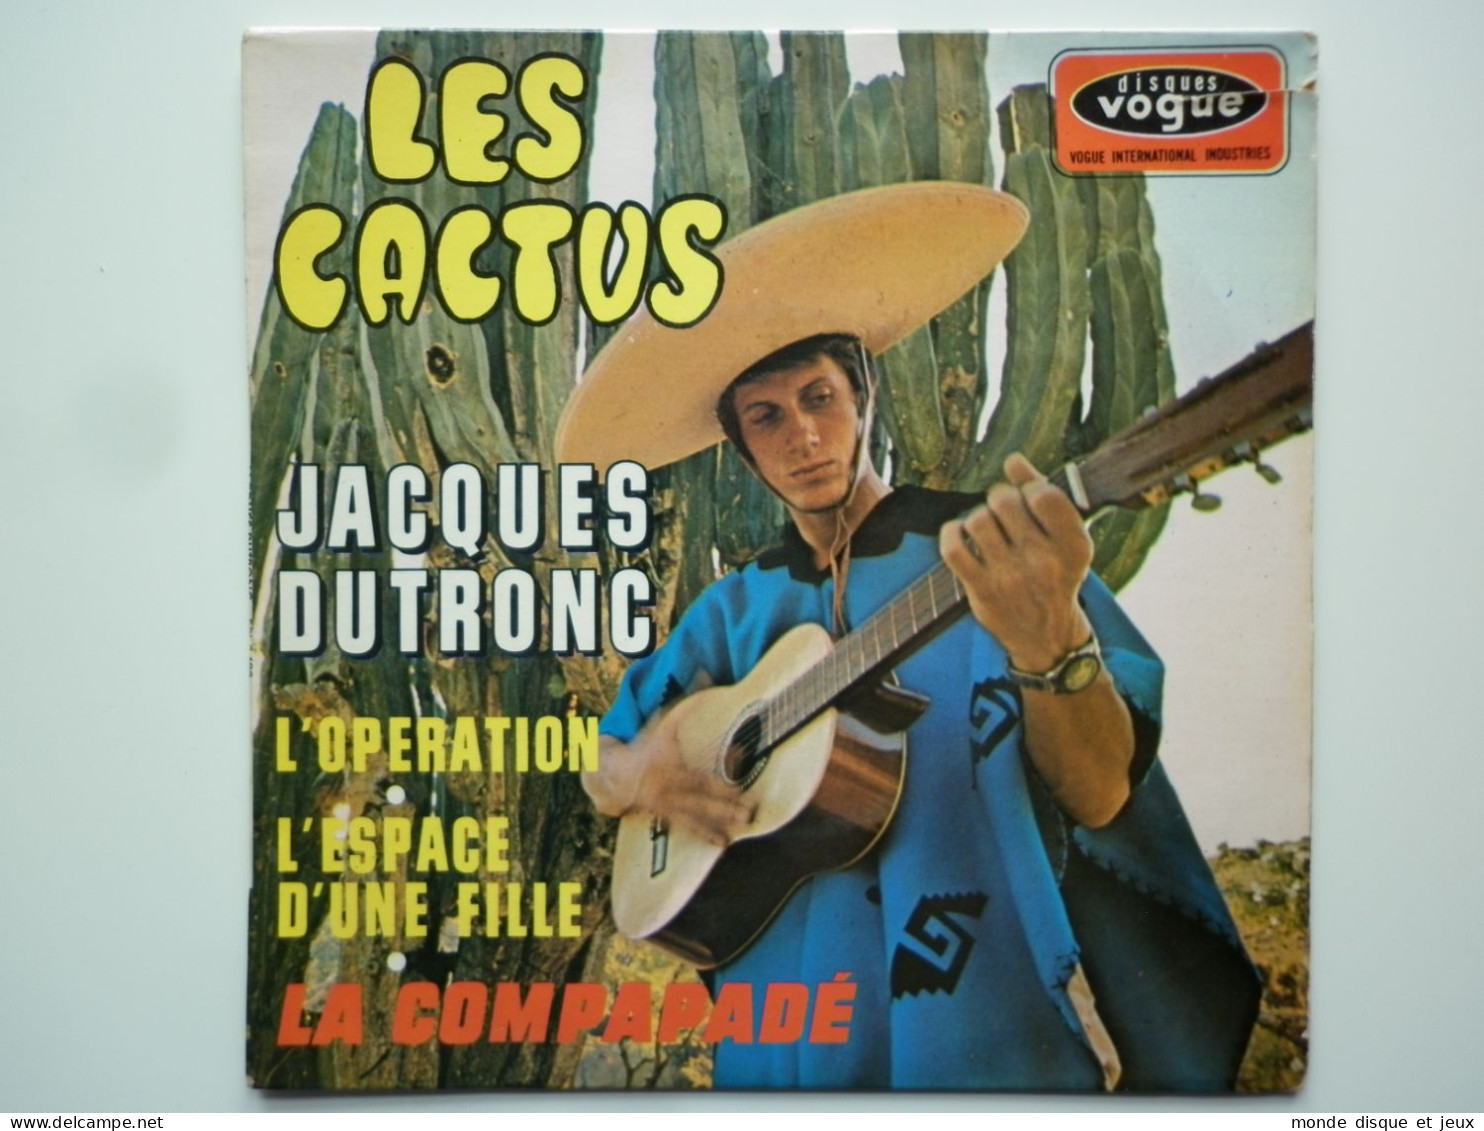 Jacques Dutronc 45Tours EP Vinyle Les Cactus - 45 T - Maxi-Single